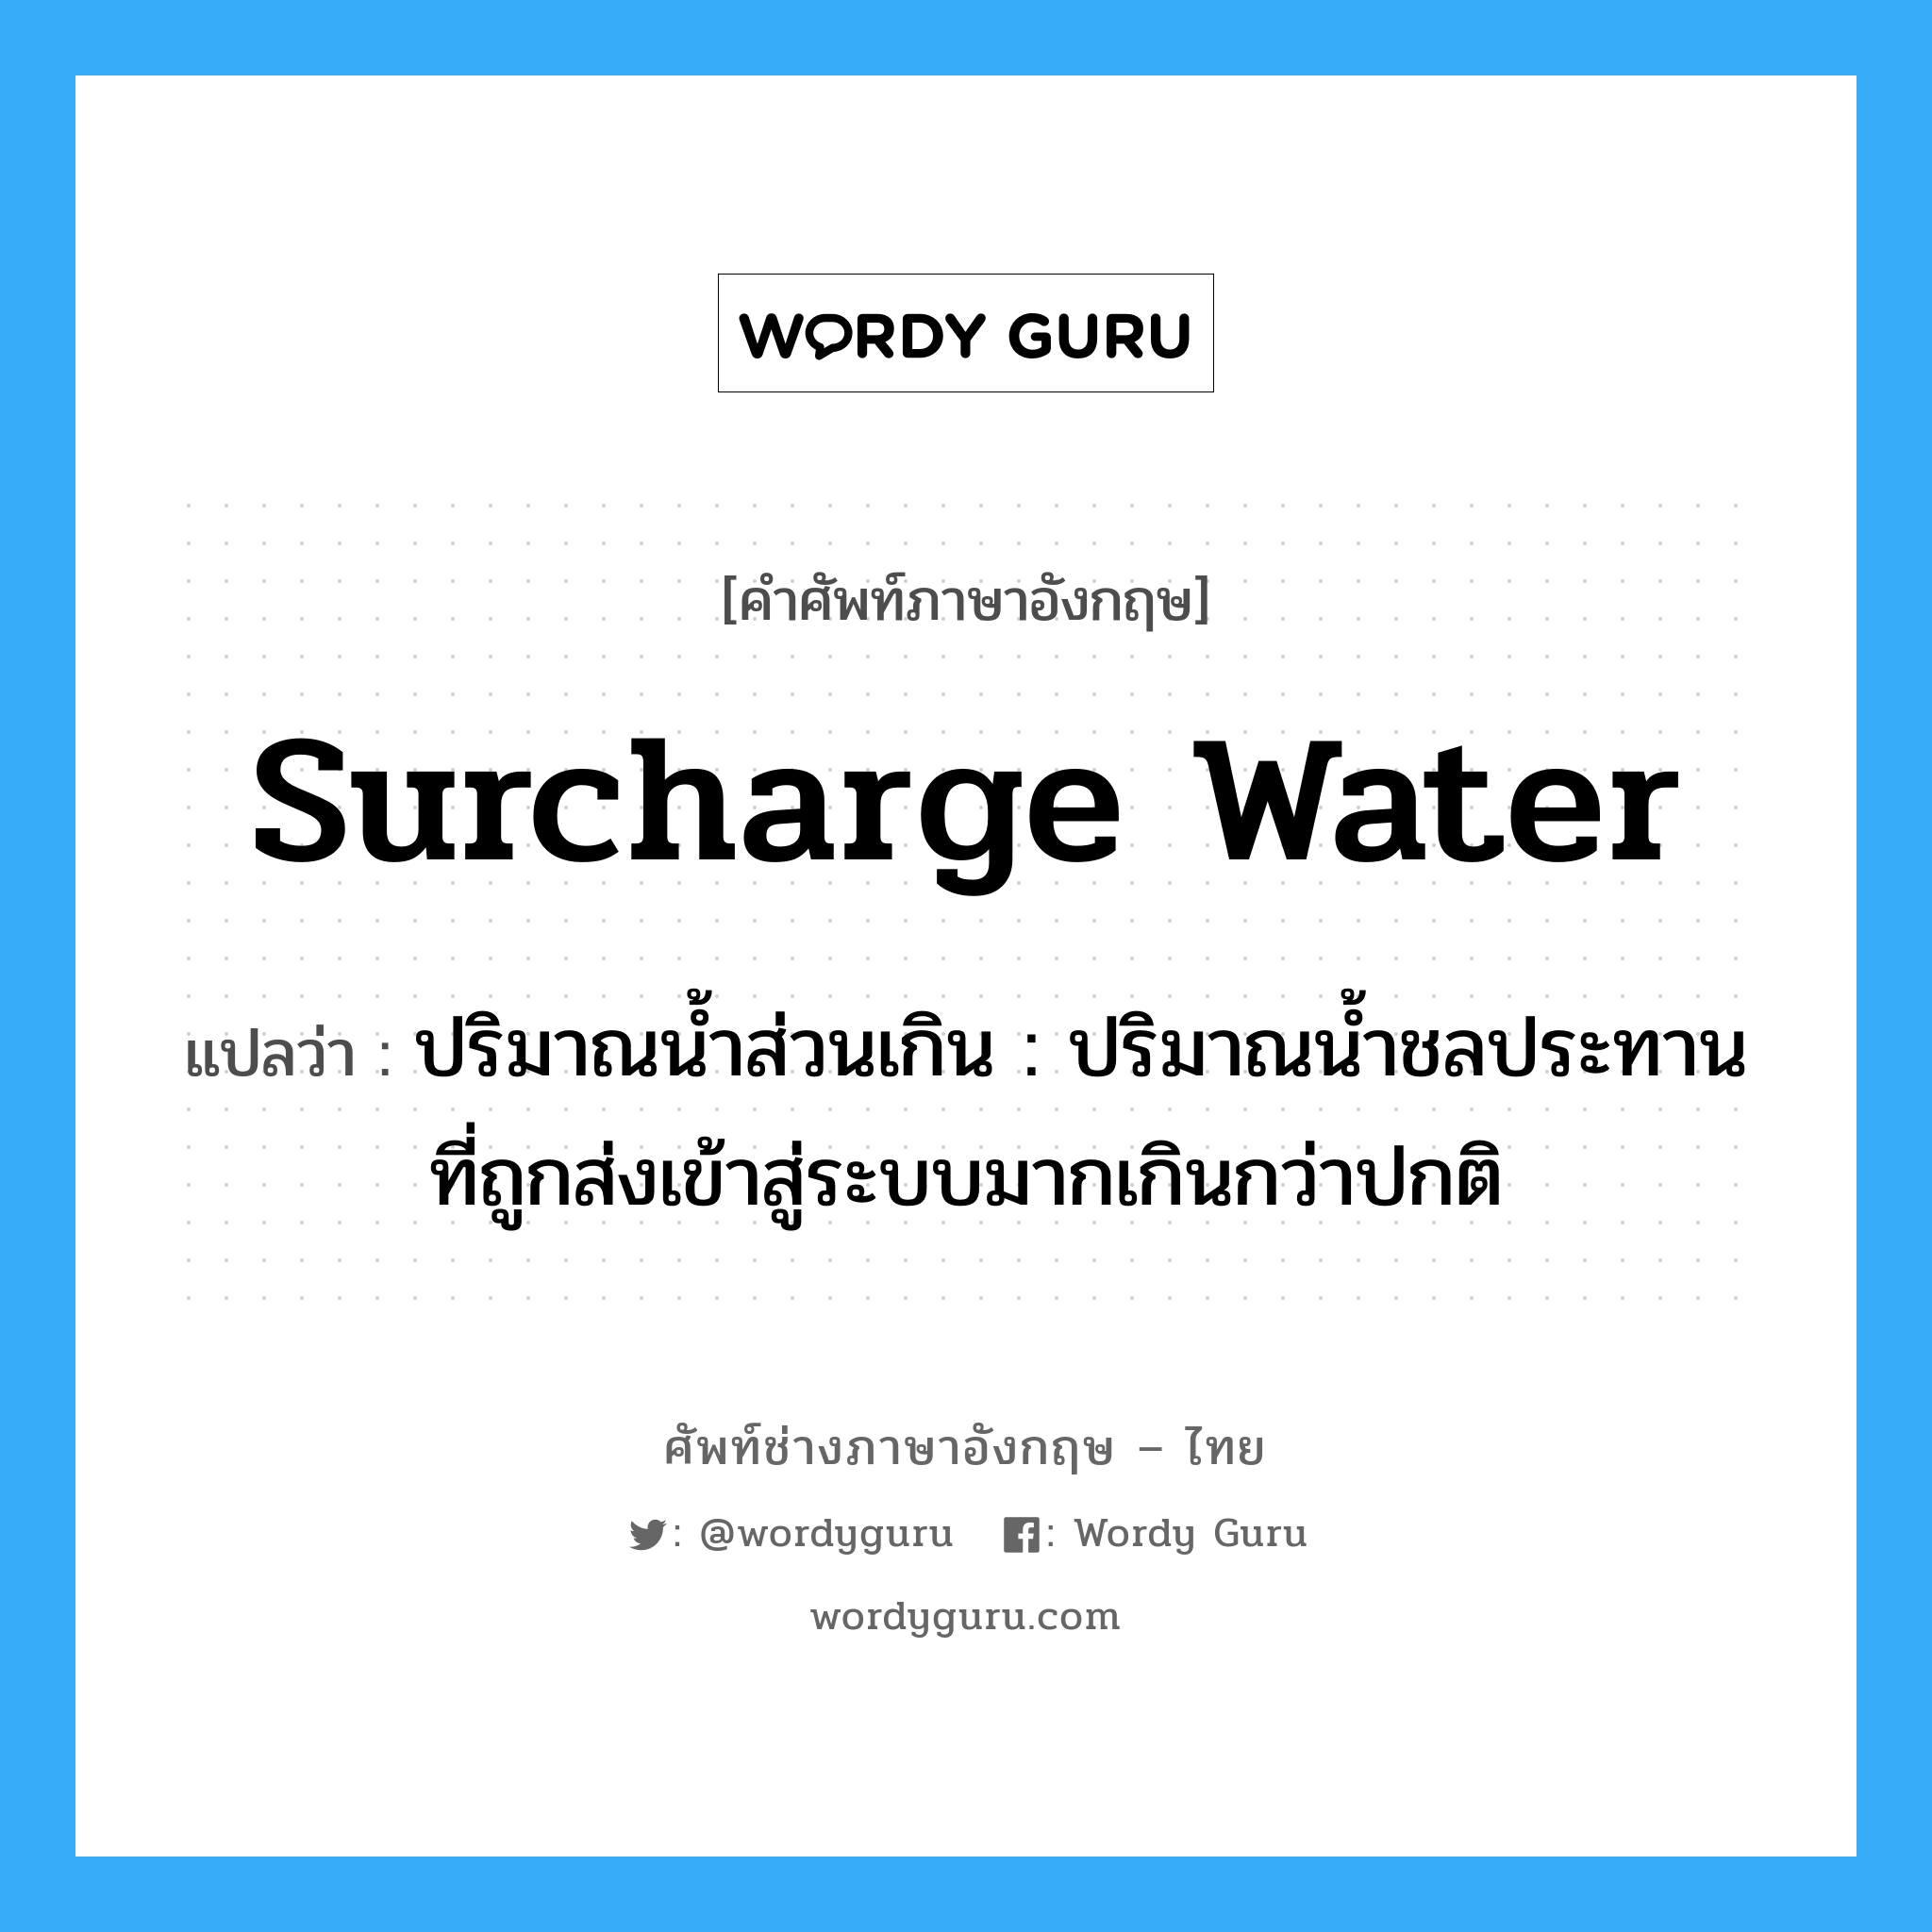 surcharge water แปลว่า?, คำศัพท์ช่างภาษาอังกฤษ - ไทย surcharge water คำศัพท์ภาษาอังกฤษ surcharge water แปลว่า ปริมาณน้ำส่วนเกิน : ปริมาณน้ำชลประทานที่ถูกส่งเข้าสู่ระบบมากเกินกว่าปกติ